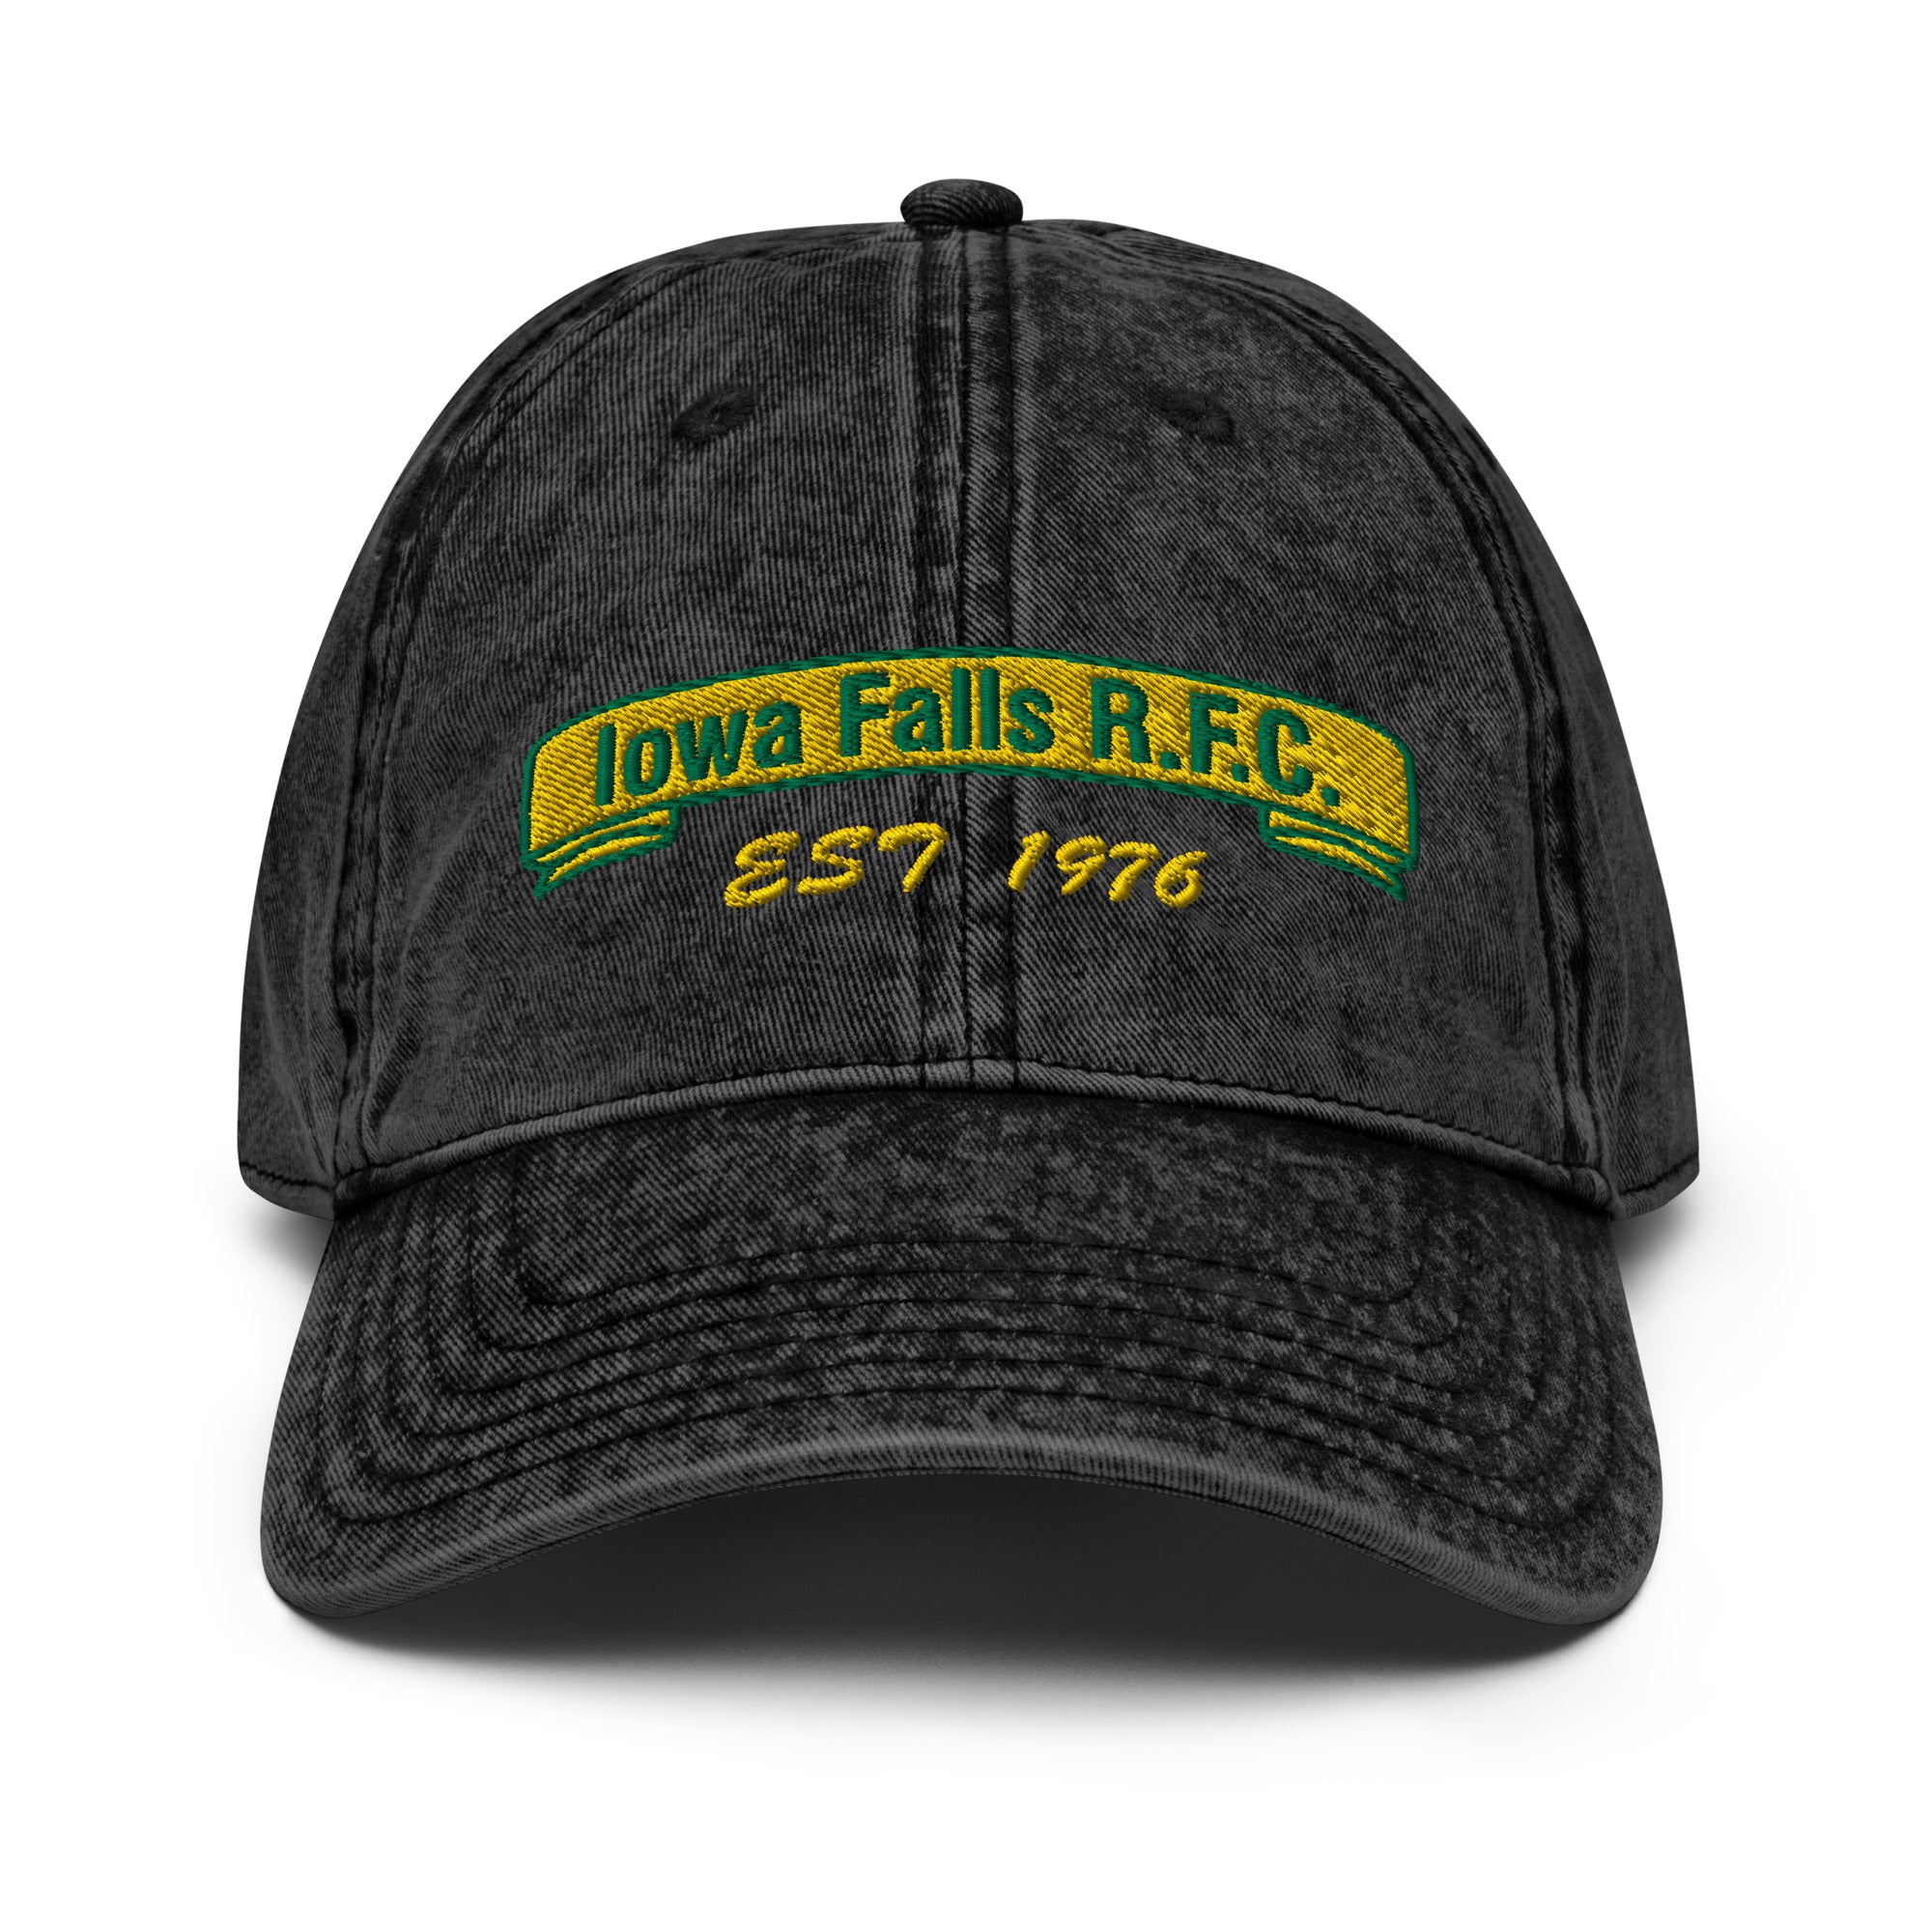 Rugby Imports Iowa Falls RFC Vintage Twill Cap